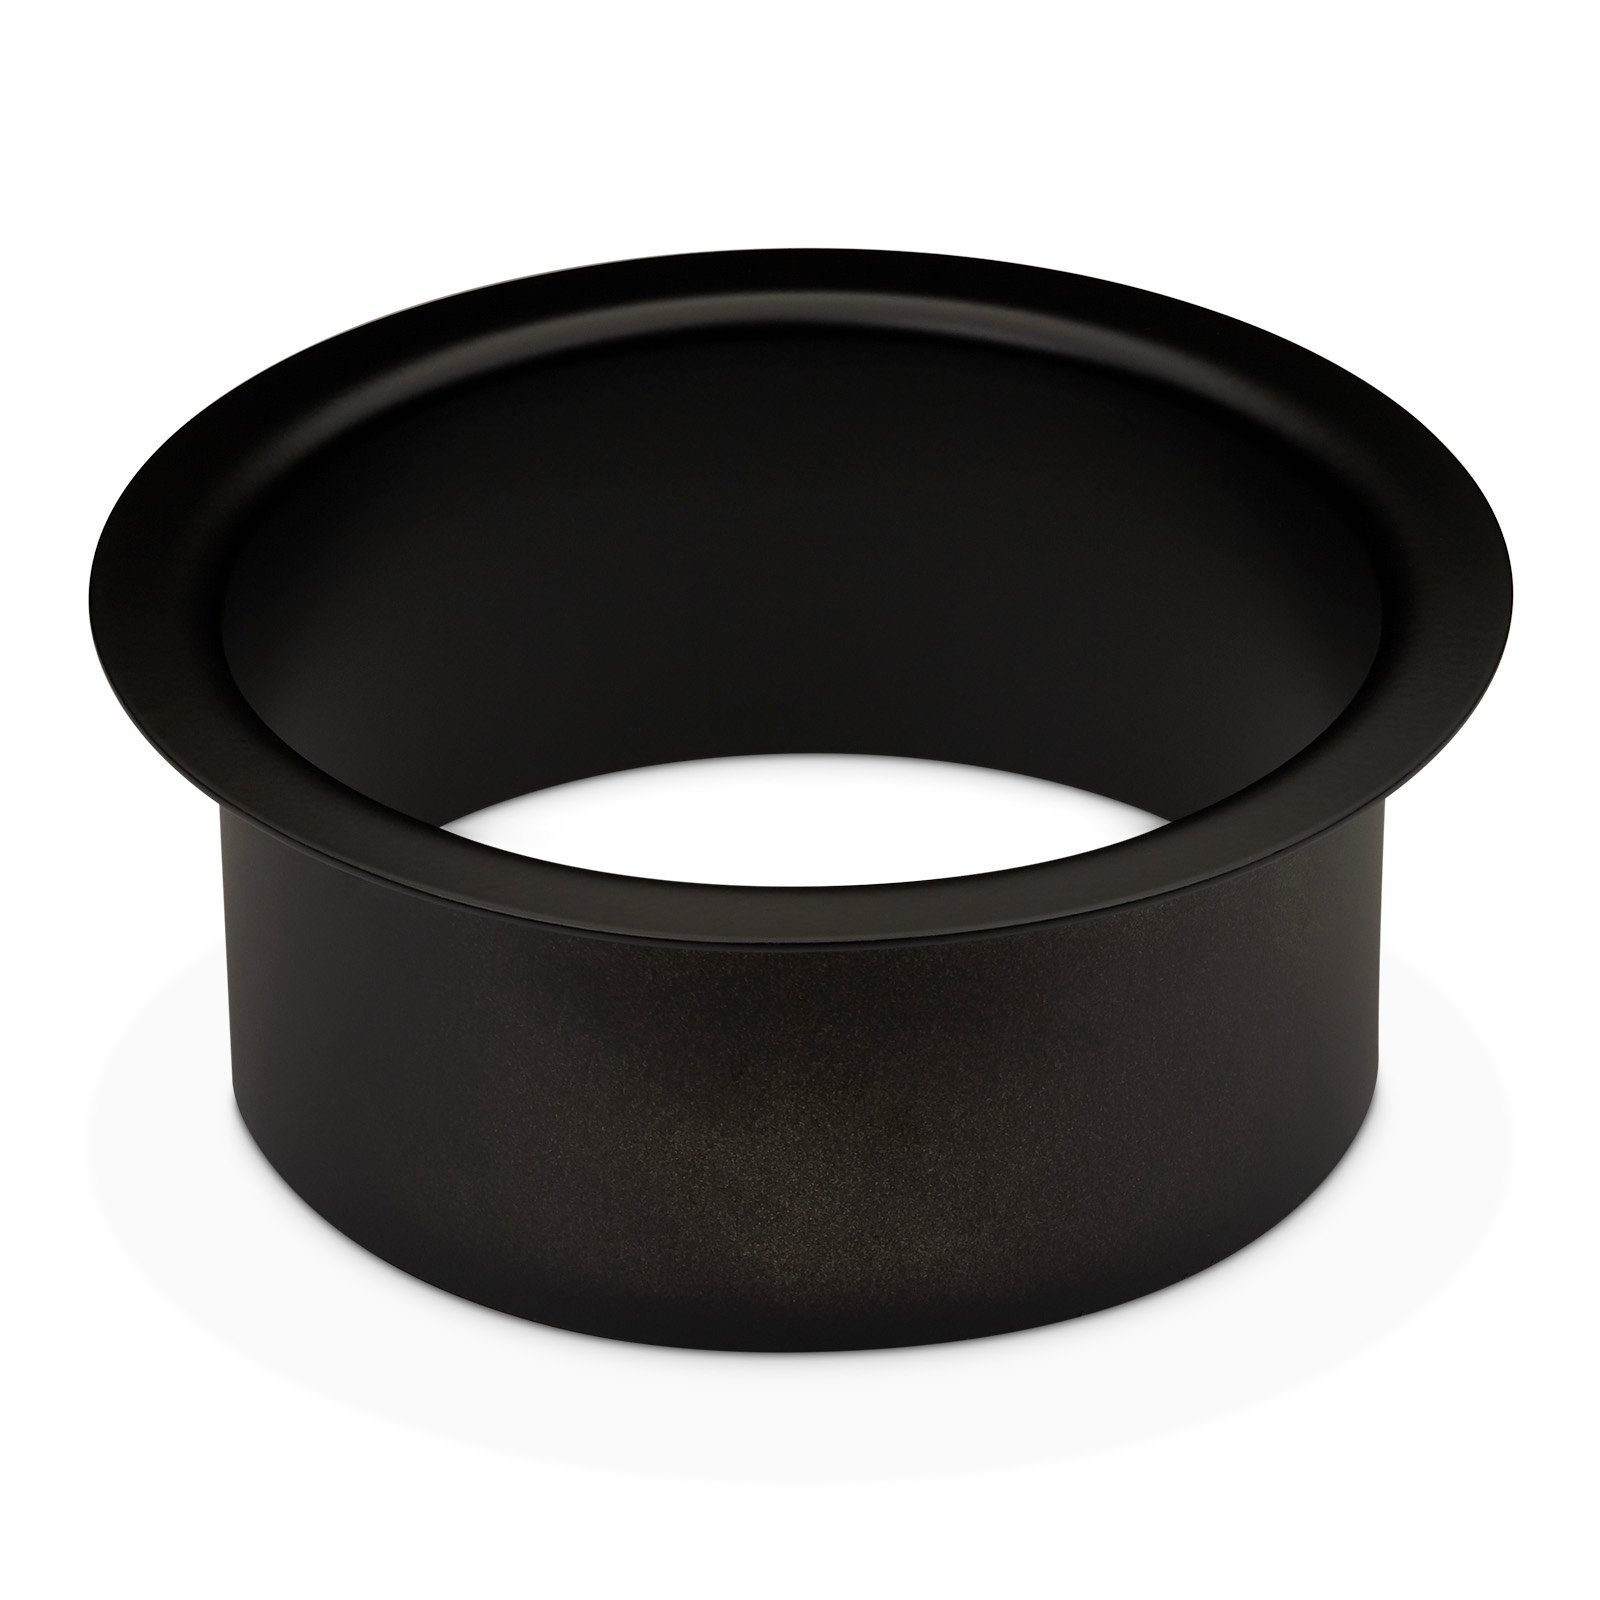 SO-TECH® Möbelbeschlag Durchwurfring Edelstahl schwarz lackiert, Durchm. 180 oder 210 mm, zum Einbau in Waschtisch- oder Arbeitsplatten